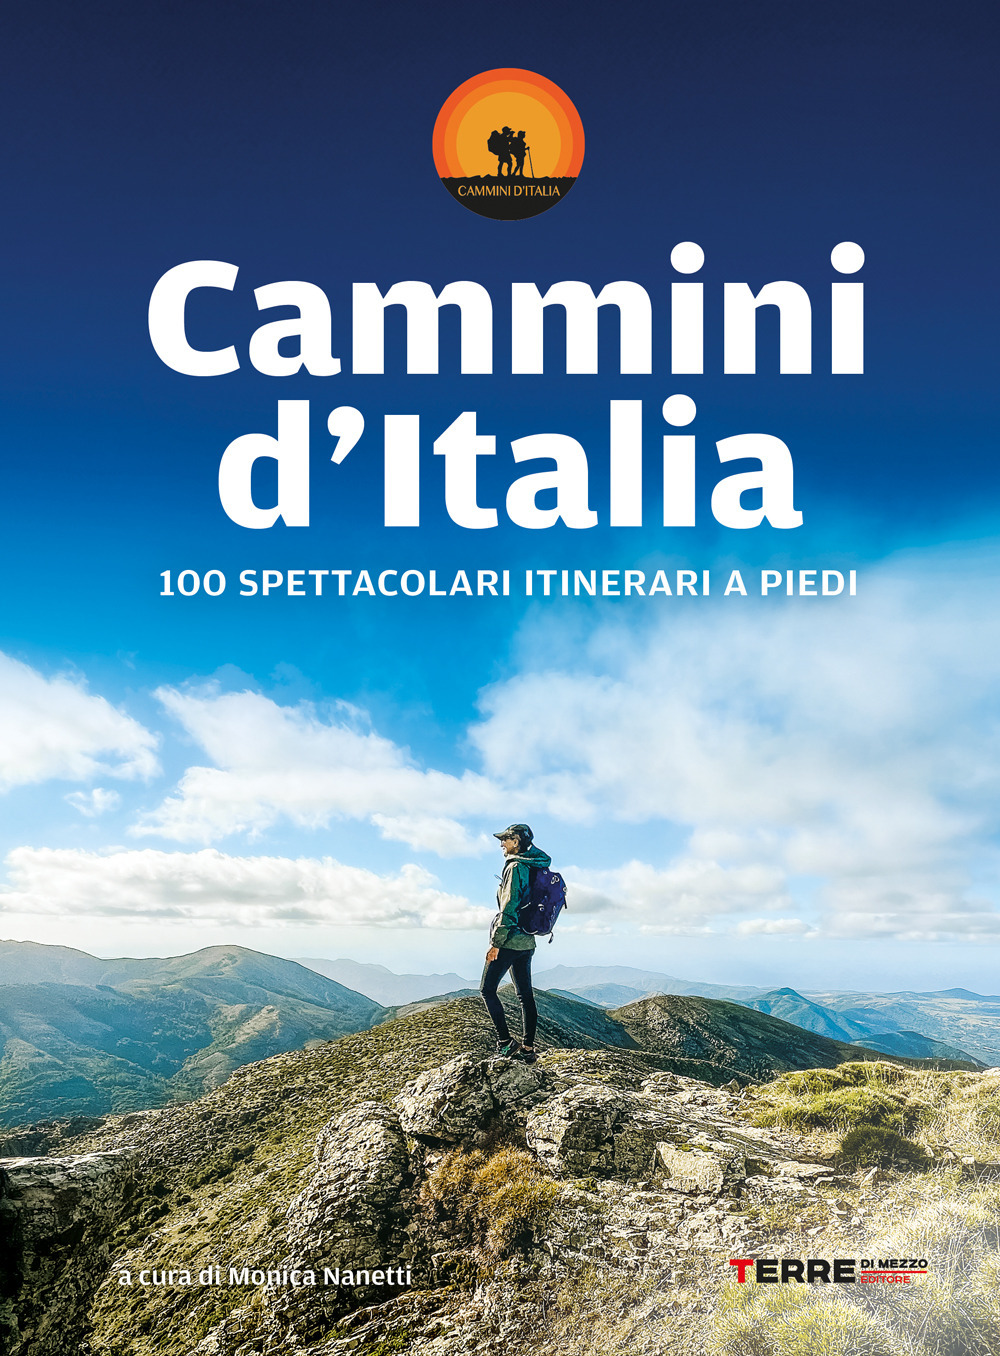 CAMMINI D’ITALIA. 100 SPETTACOLARI ITINERARI A PIEDI